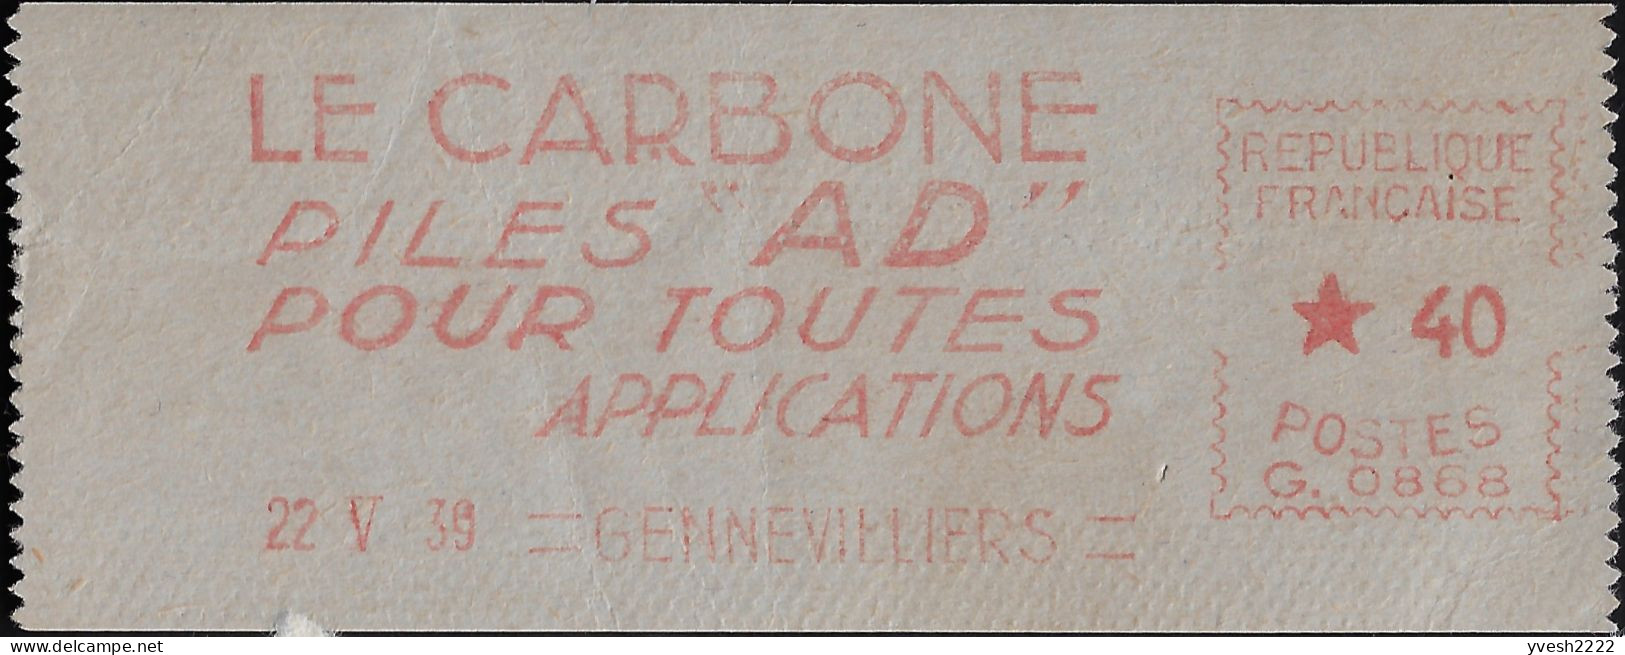 France 1939. Empreinte De Machine à Affranchir. Le Carbone, Piles AD Pour Toutes Applications - Elektrizität